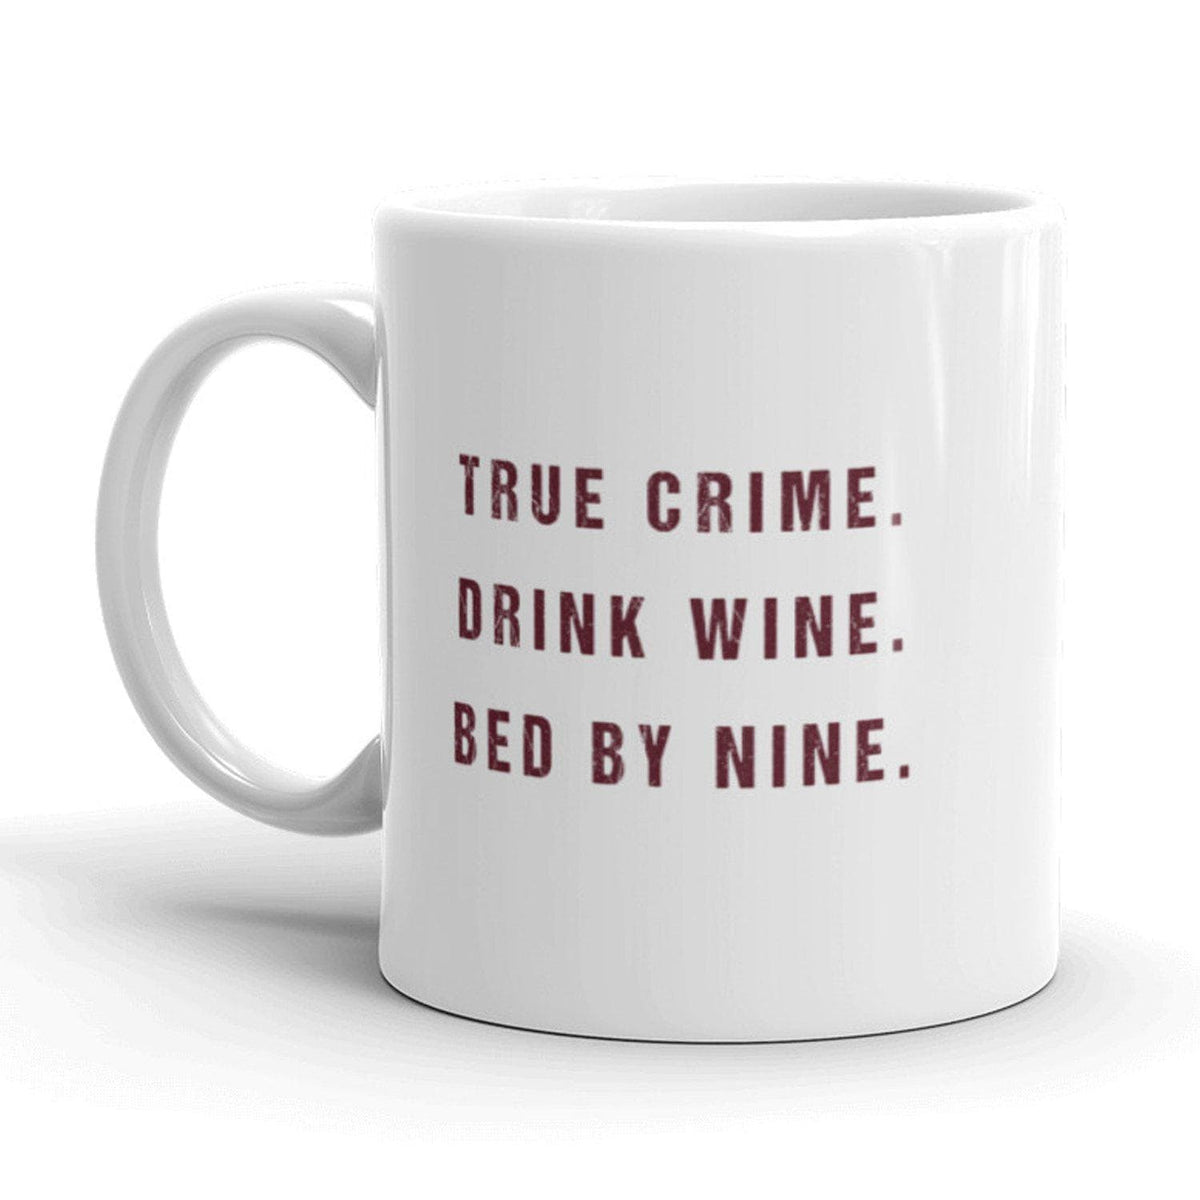 True Crime Drink Wine Bed By Nine Mug - Crazy Dog T-Shirts